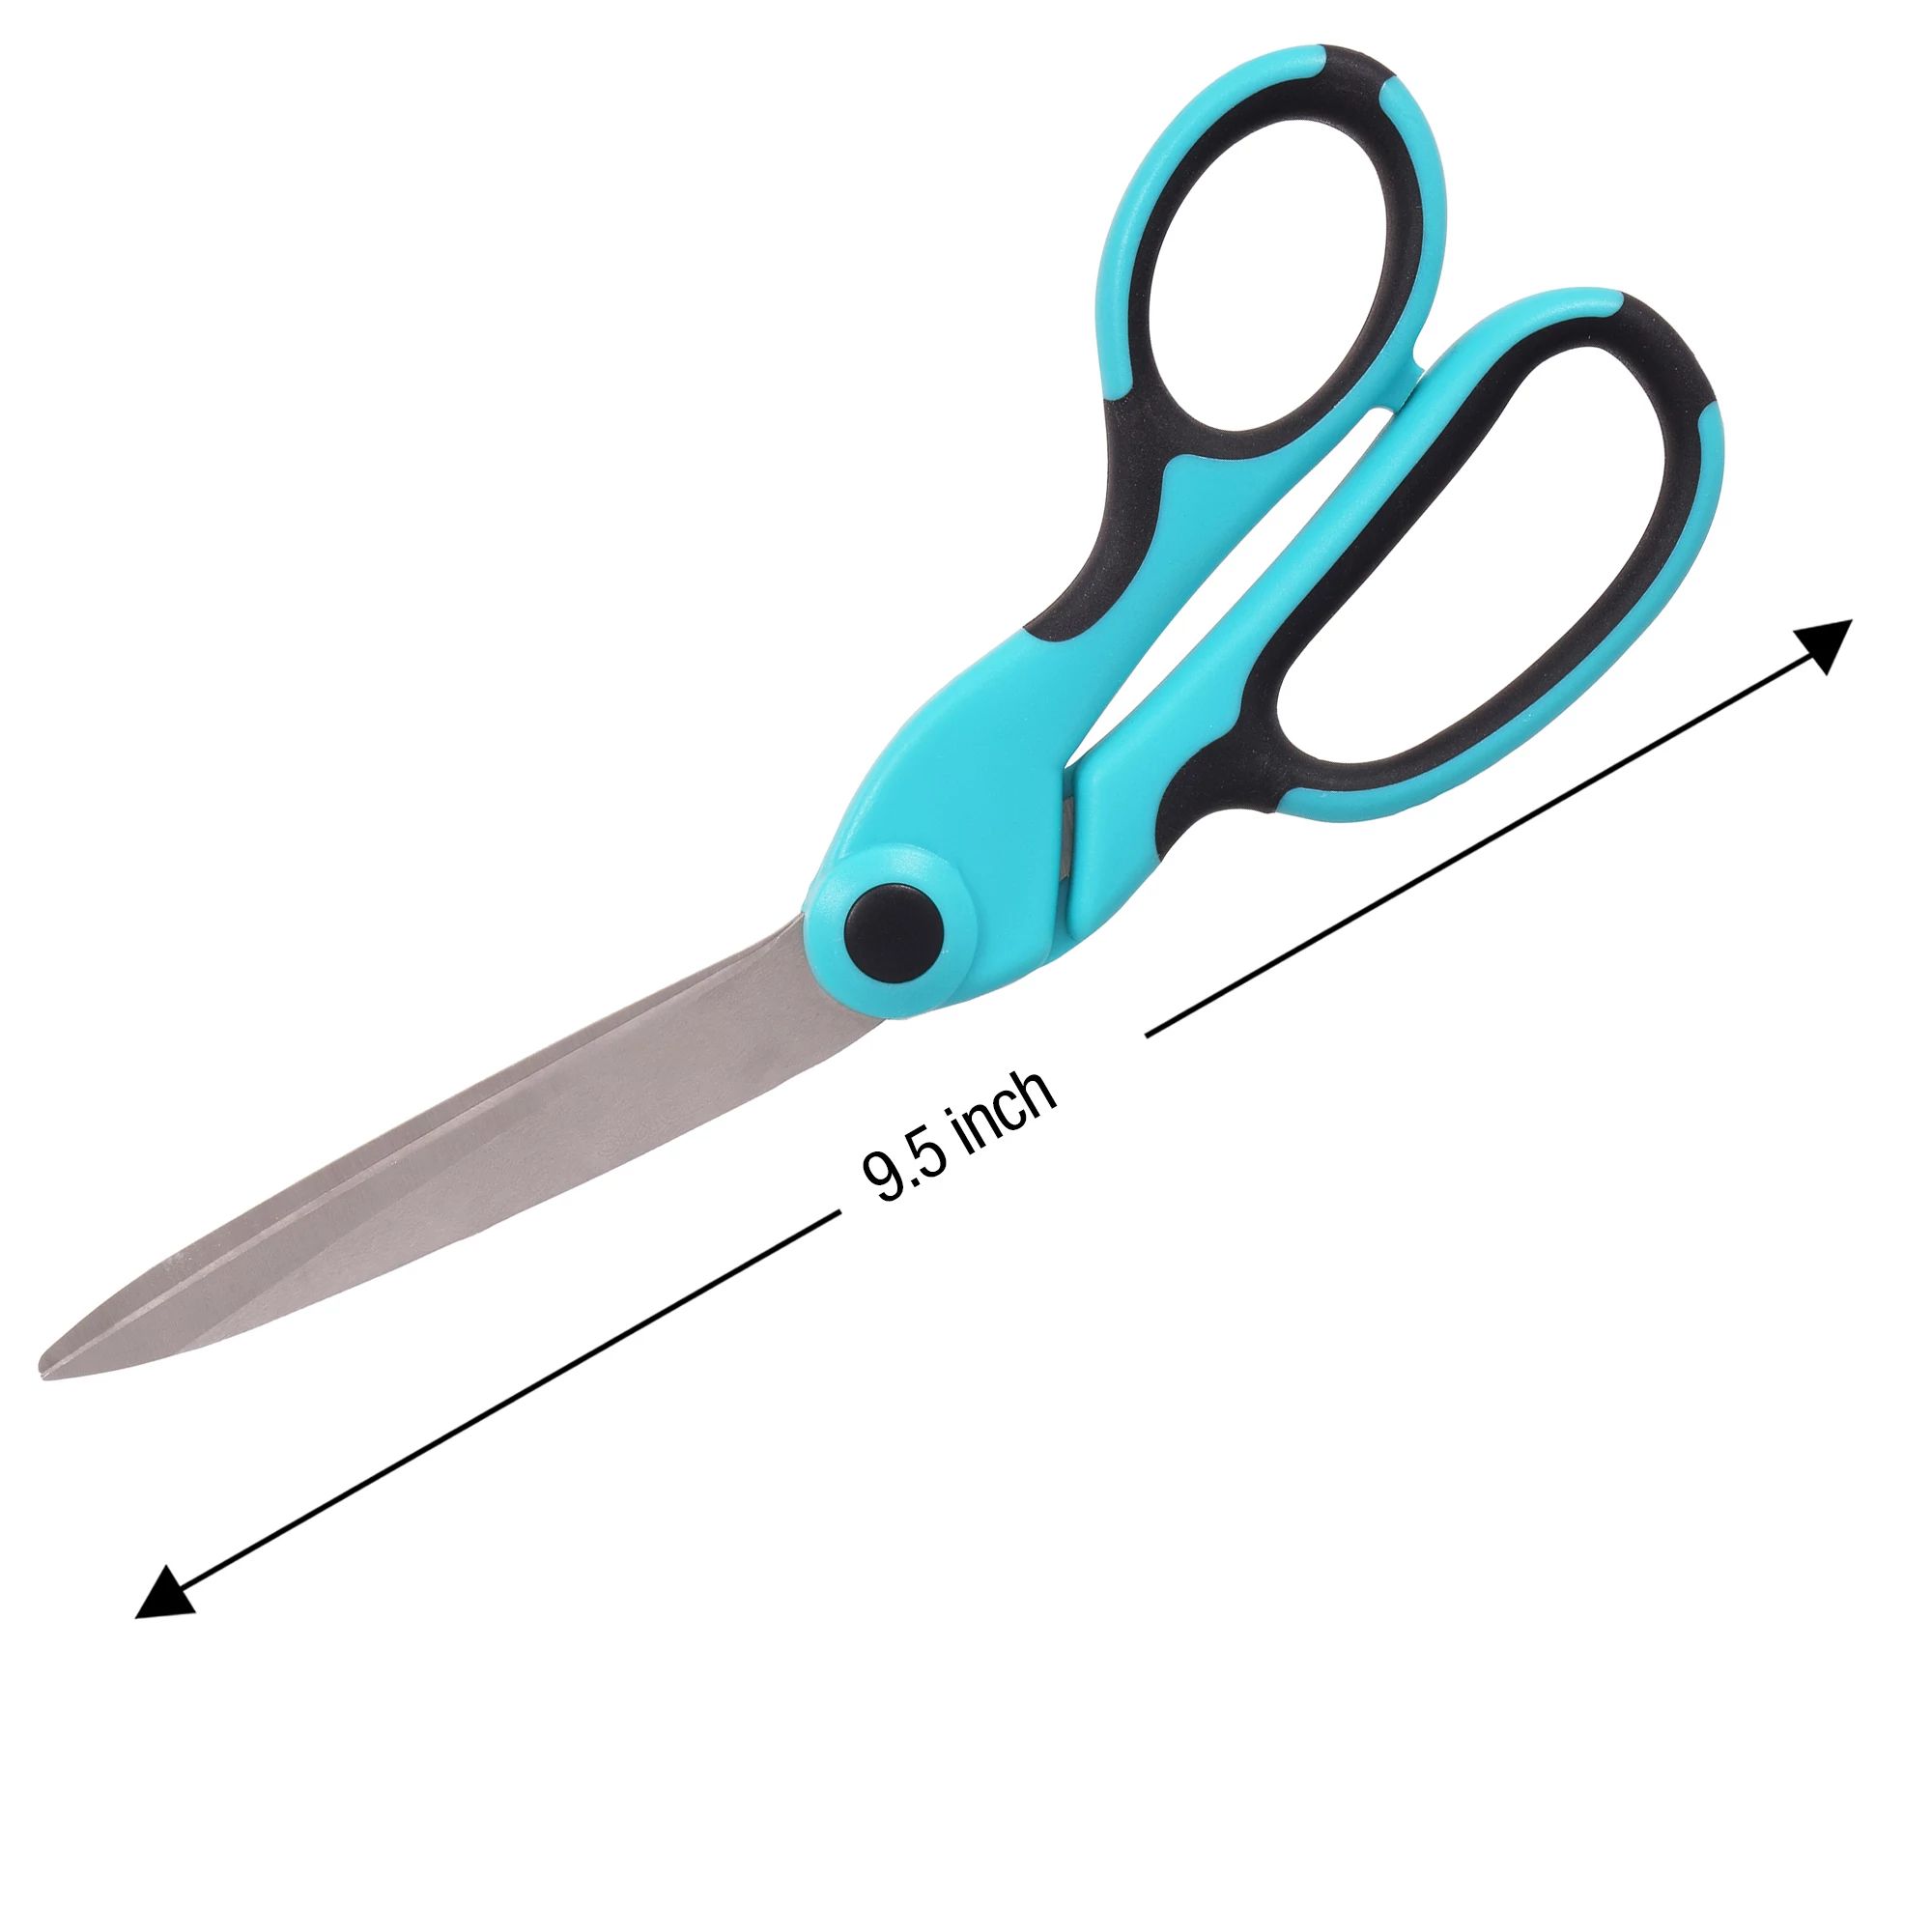 SINGER 9.5" ProSeries™ Heavy-Duty Bent Scissors with Comfort Grip